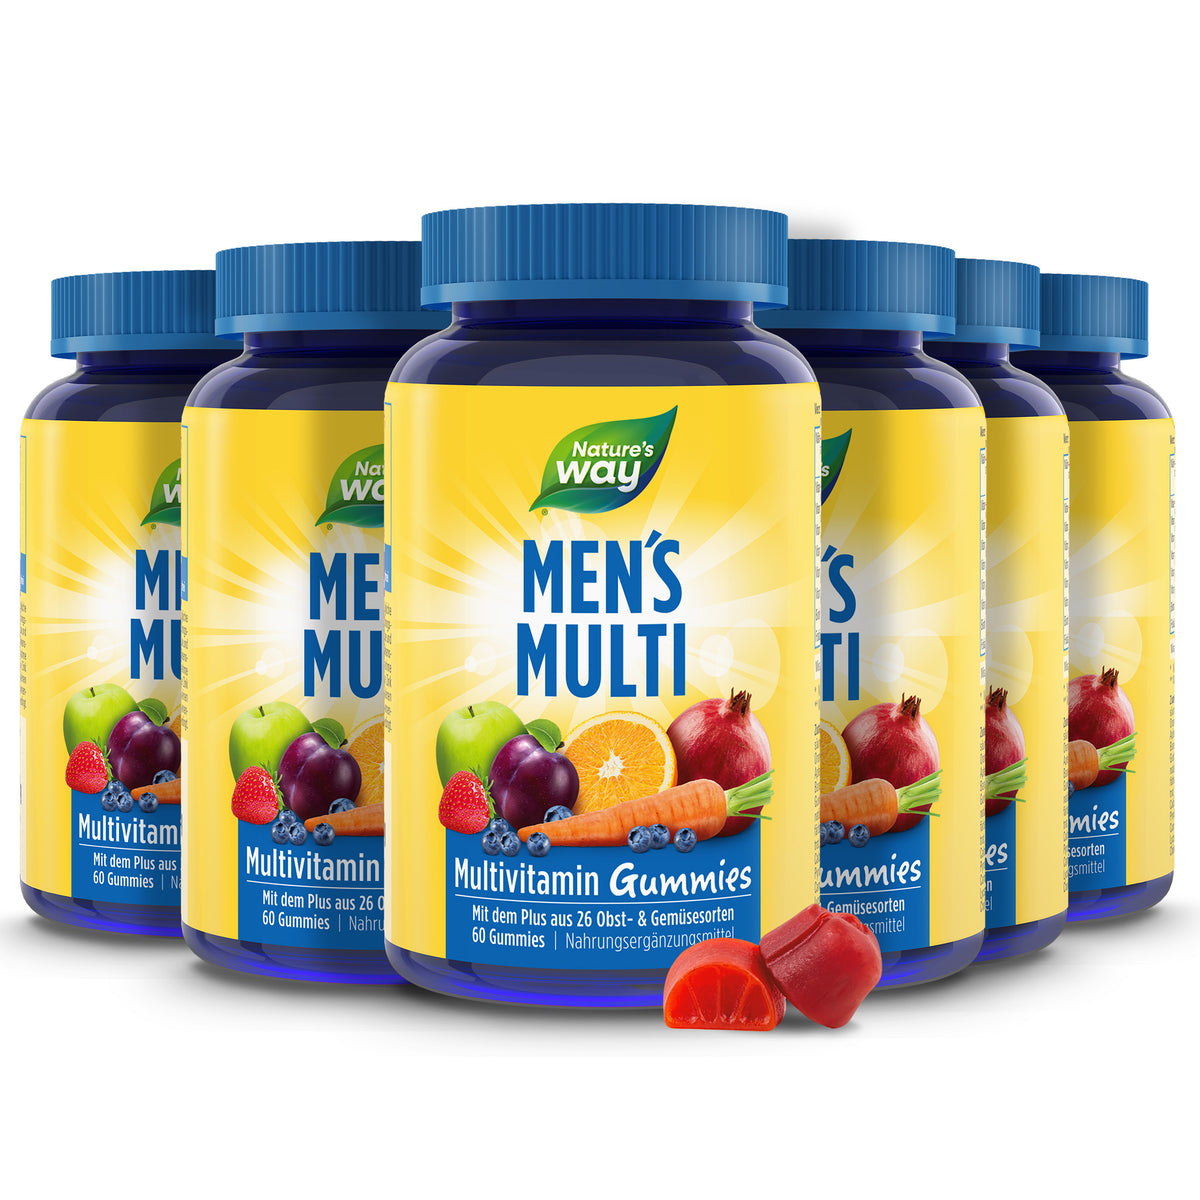 Men’s Multi Multivitamin Gummies